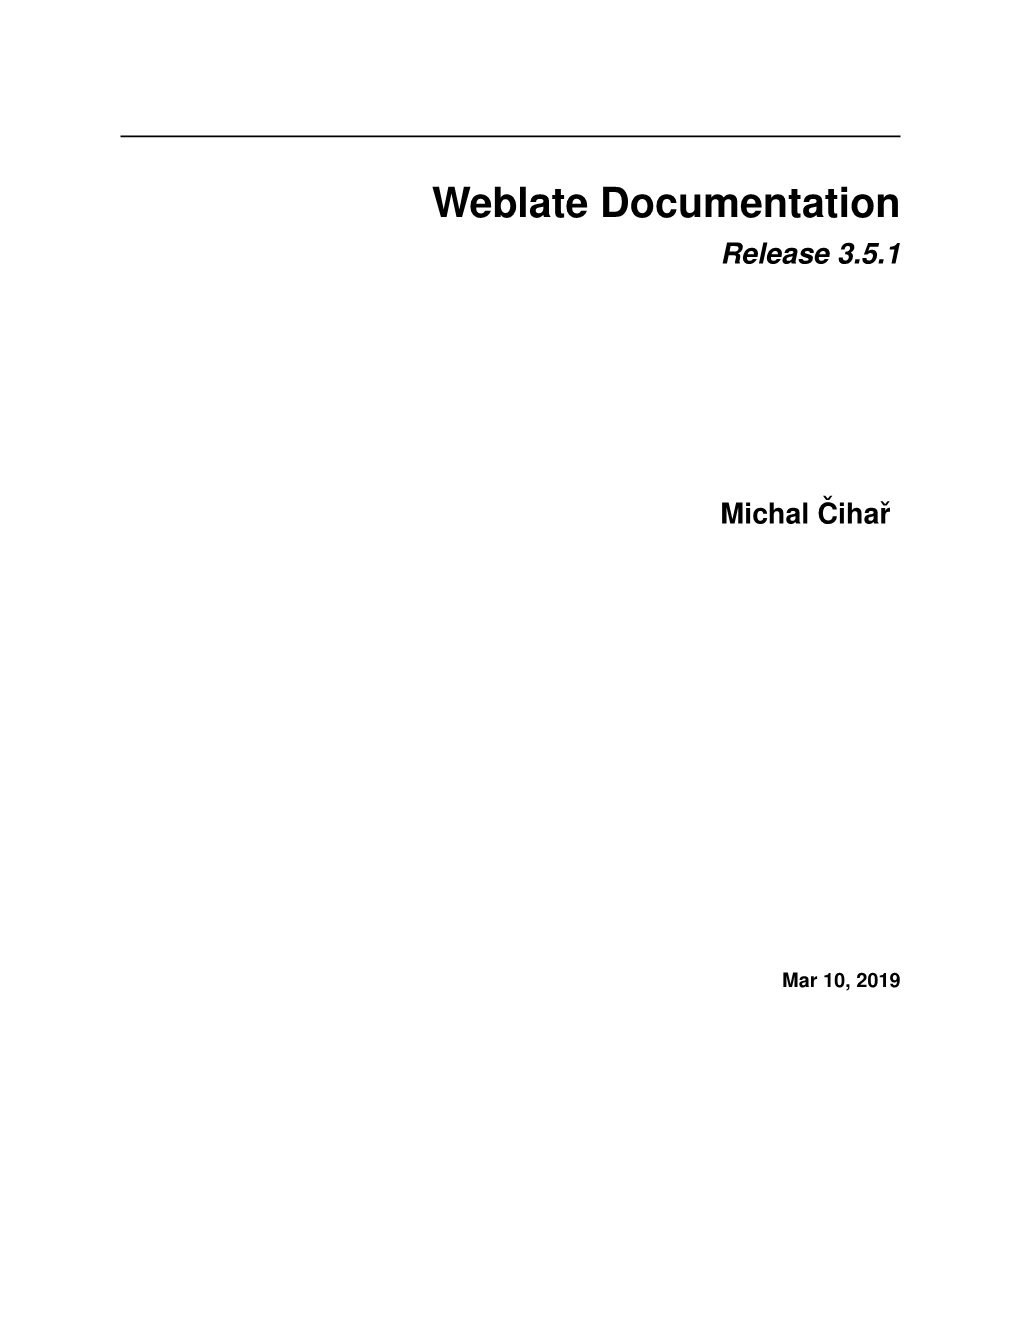 Weblate Documentation Release 3.5.1